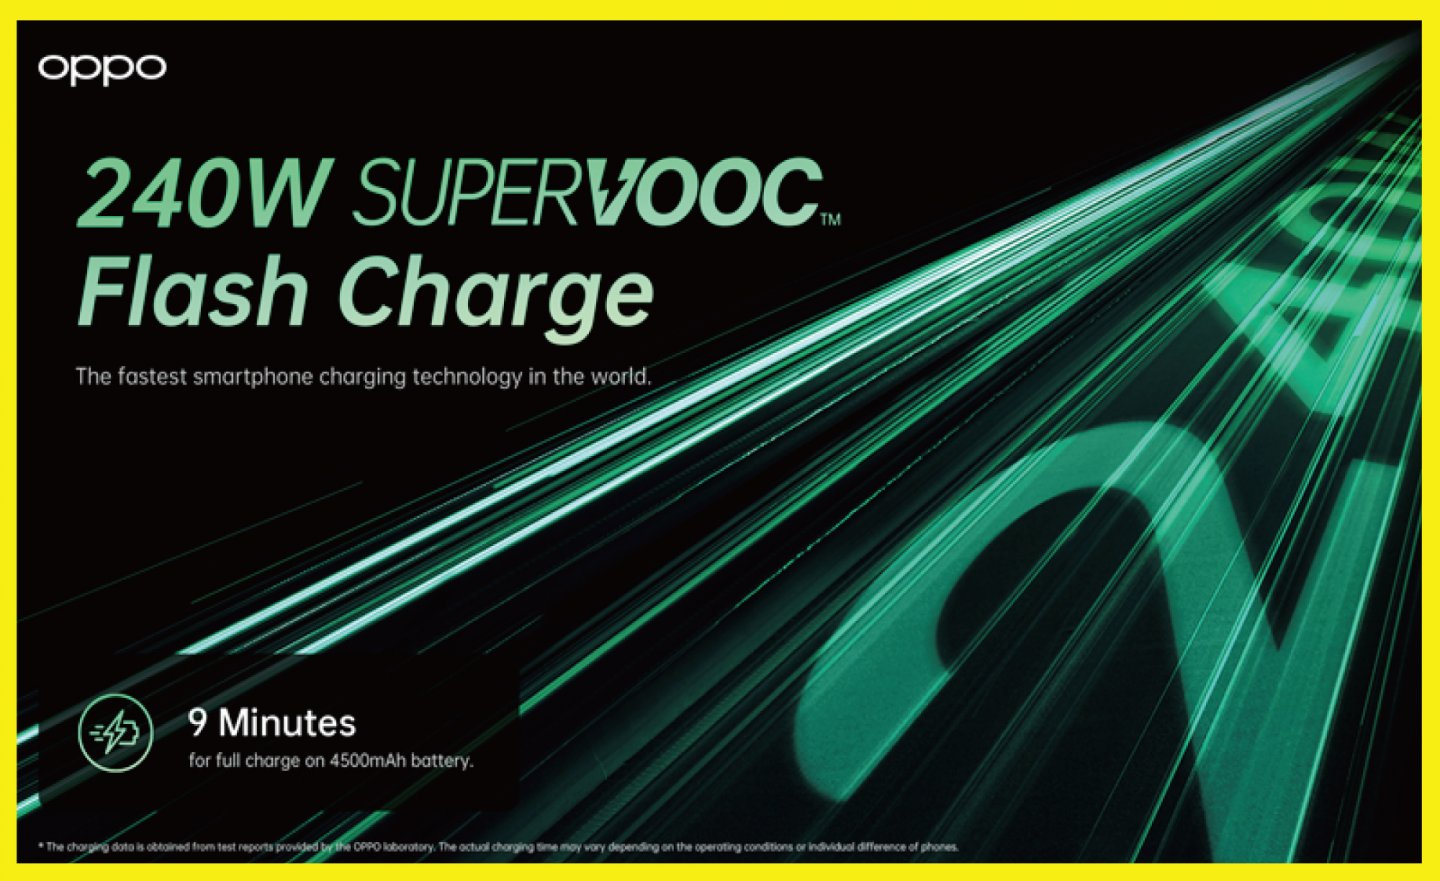 【MWC 2022】OPPO 發表 240W 超級閃充技術， 9 分鐘充飽 4500mAh 電池